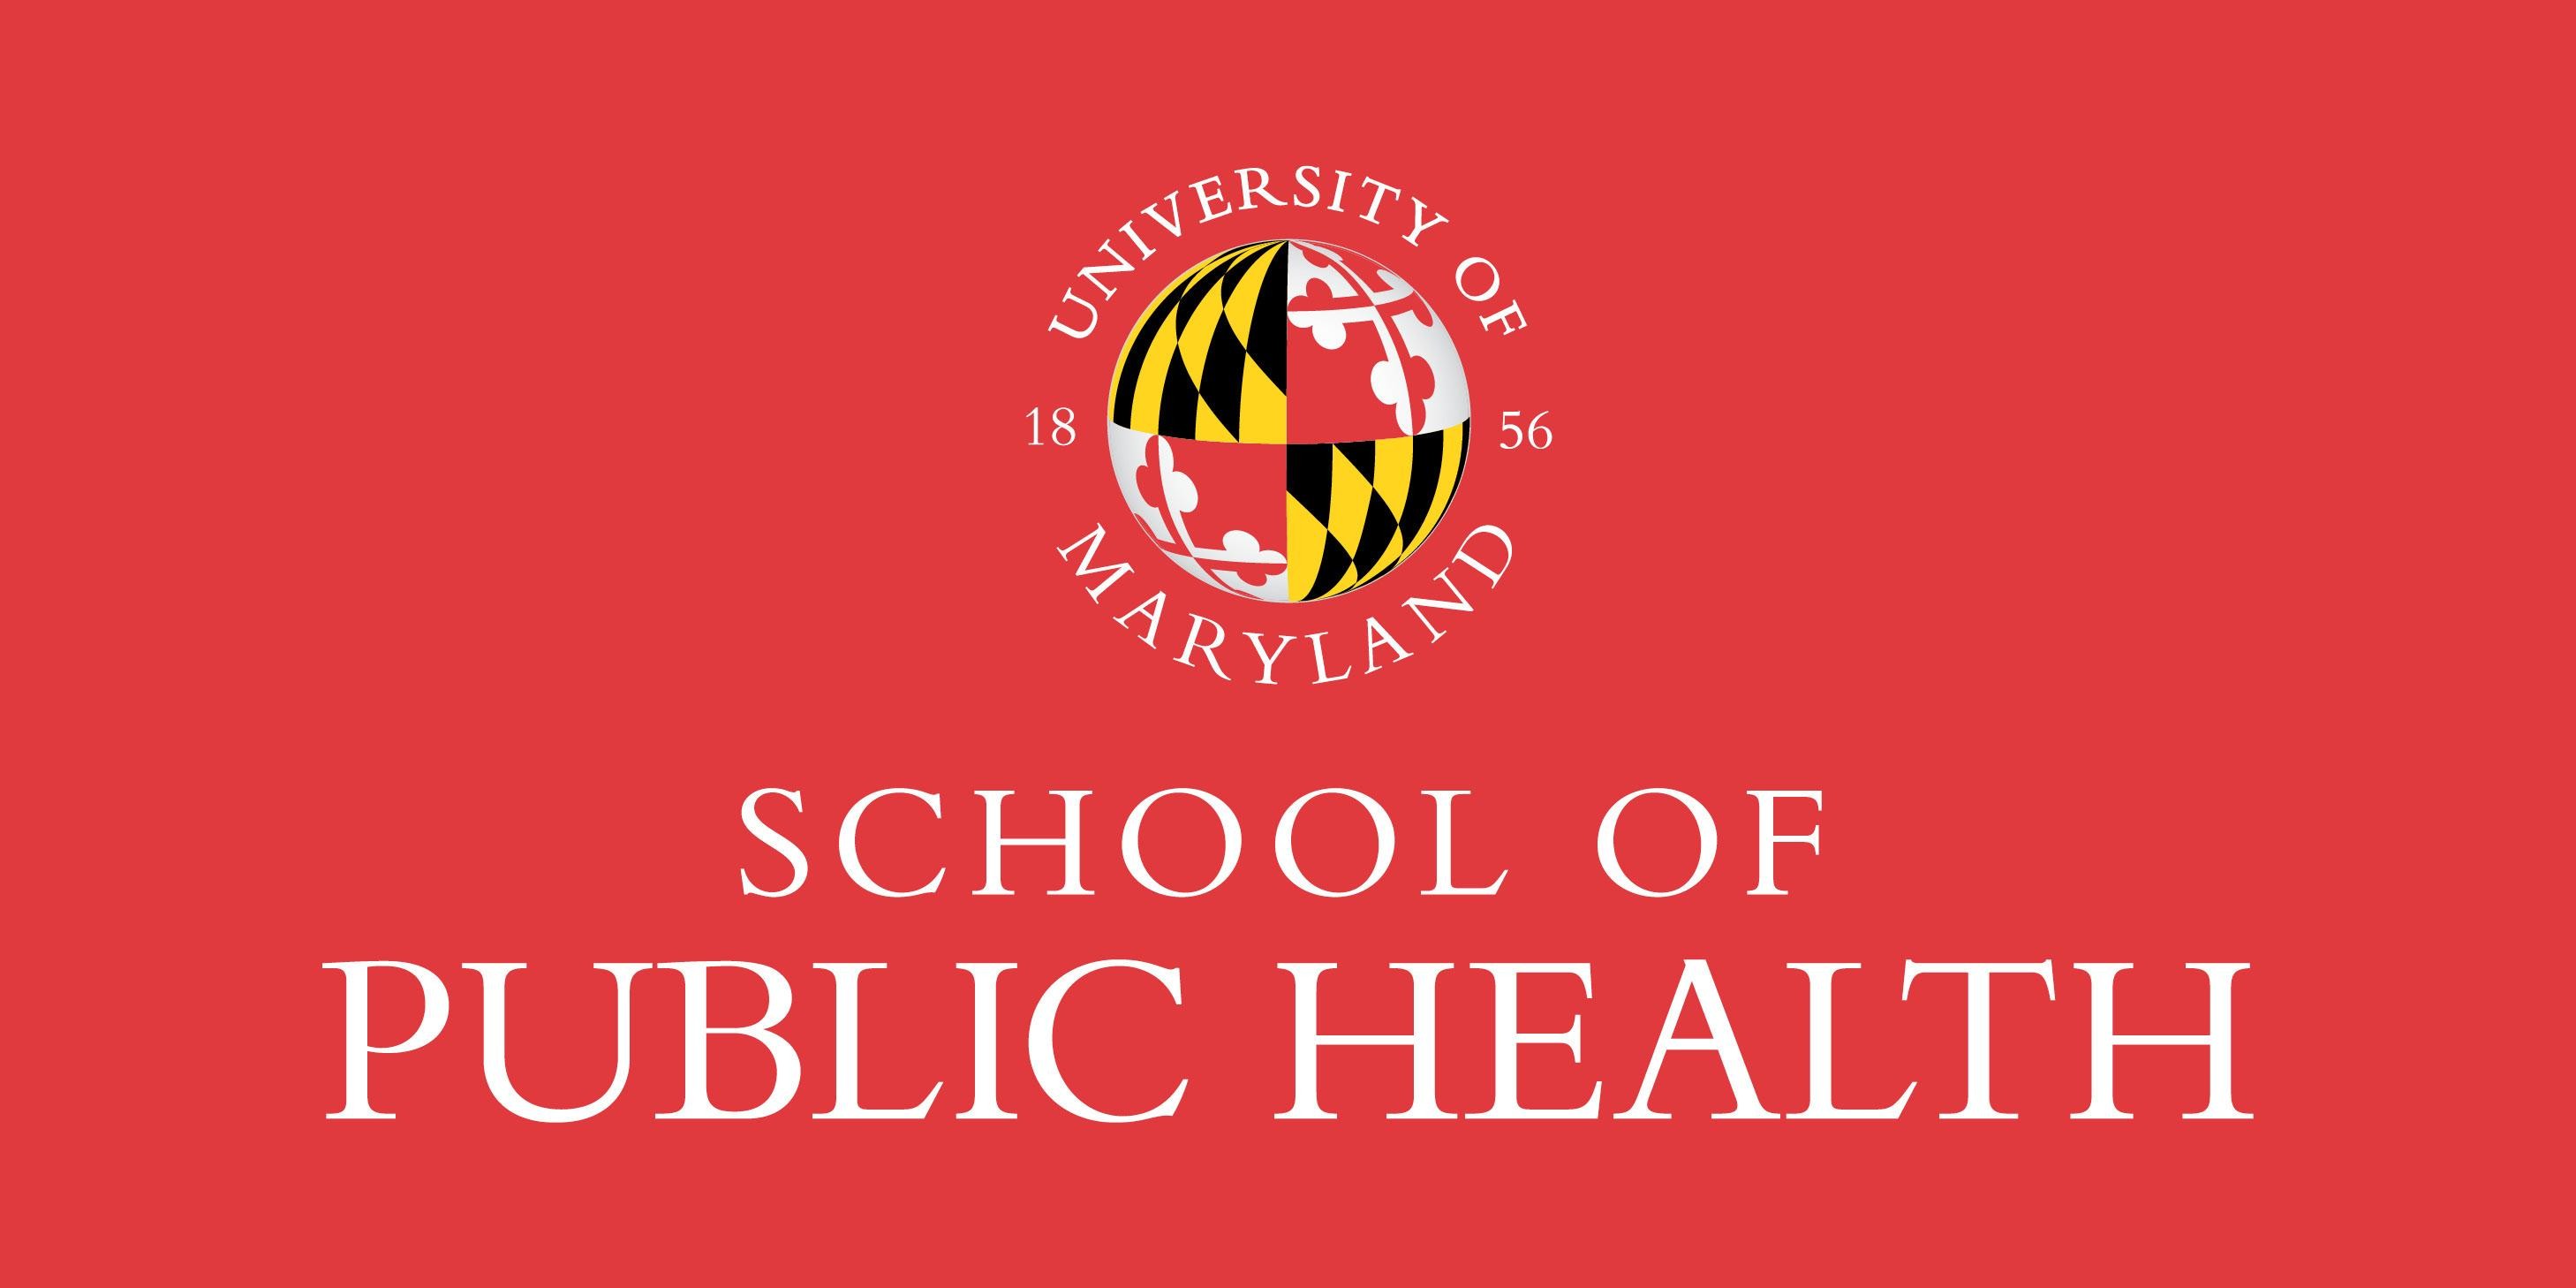 Maryland Üniversitesi, Sağlık Öncesi Öğrencilerine Yardım Amaçlı Yeni Katalizör Girişimini Başlatıyor